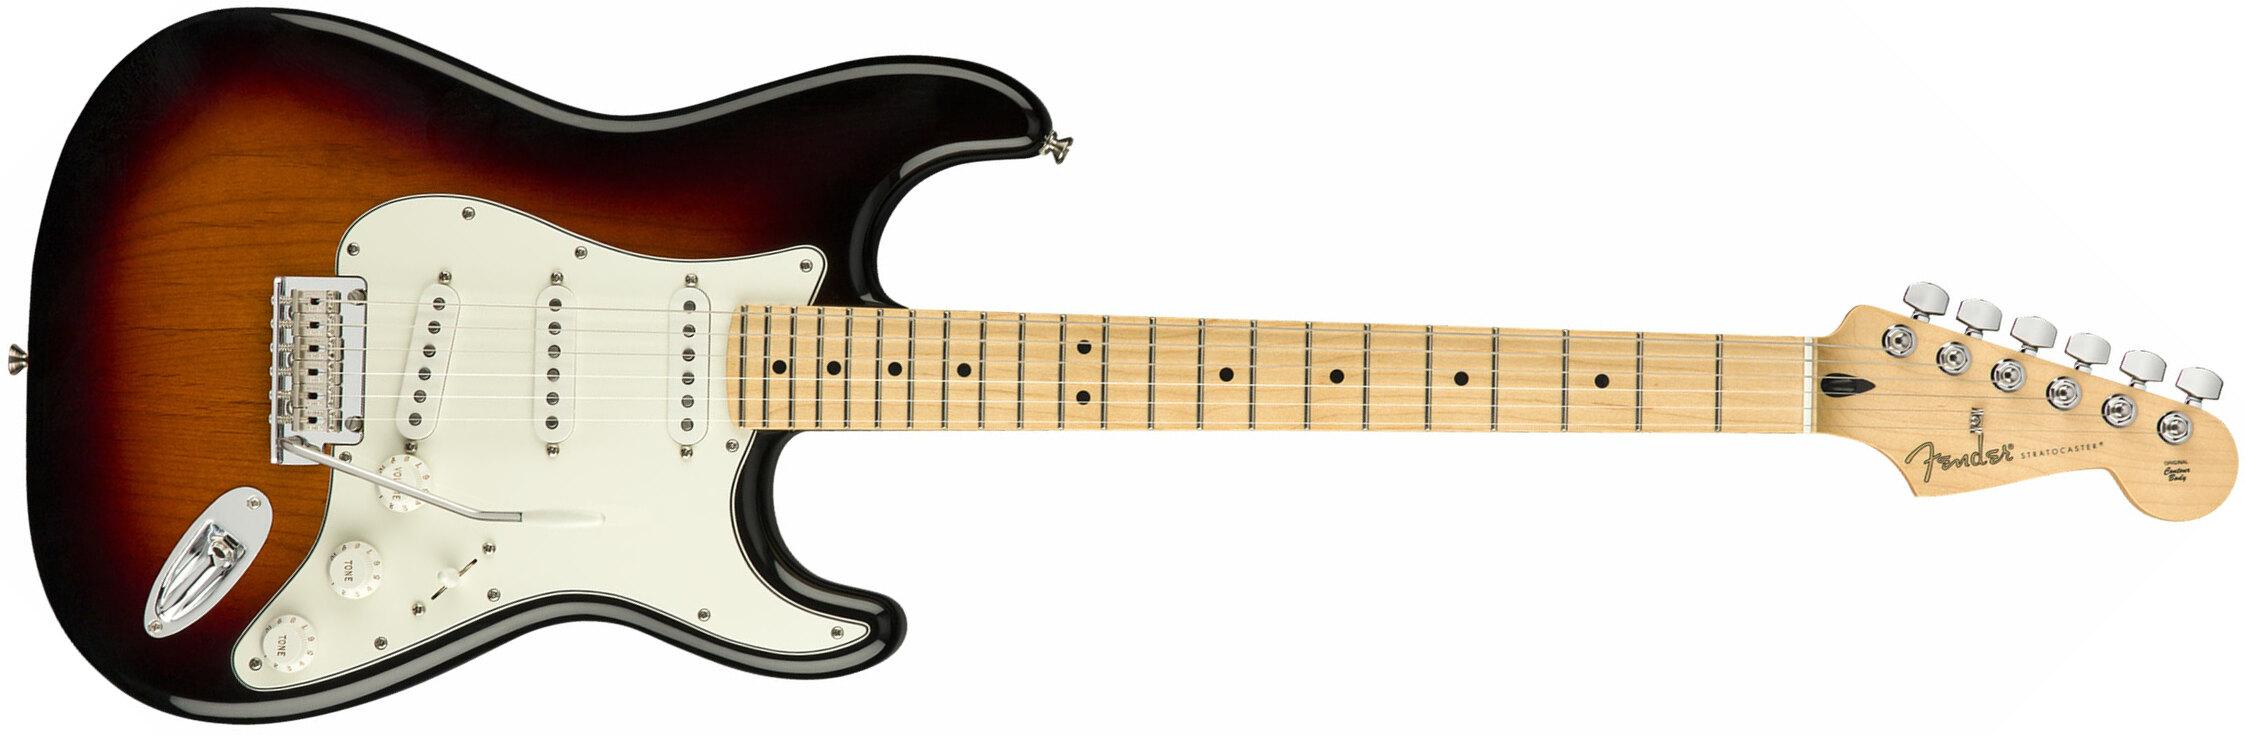 Fender Strat Player Mex Sss Mn - 3-color Sunburst - Guitare Électrique Forme Str - Main picture